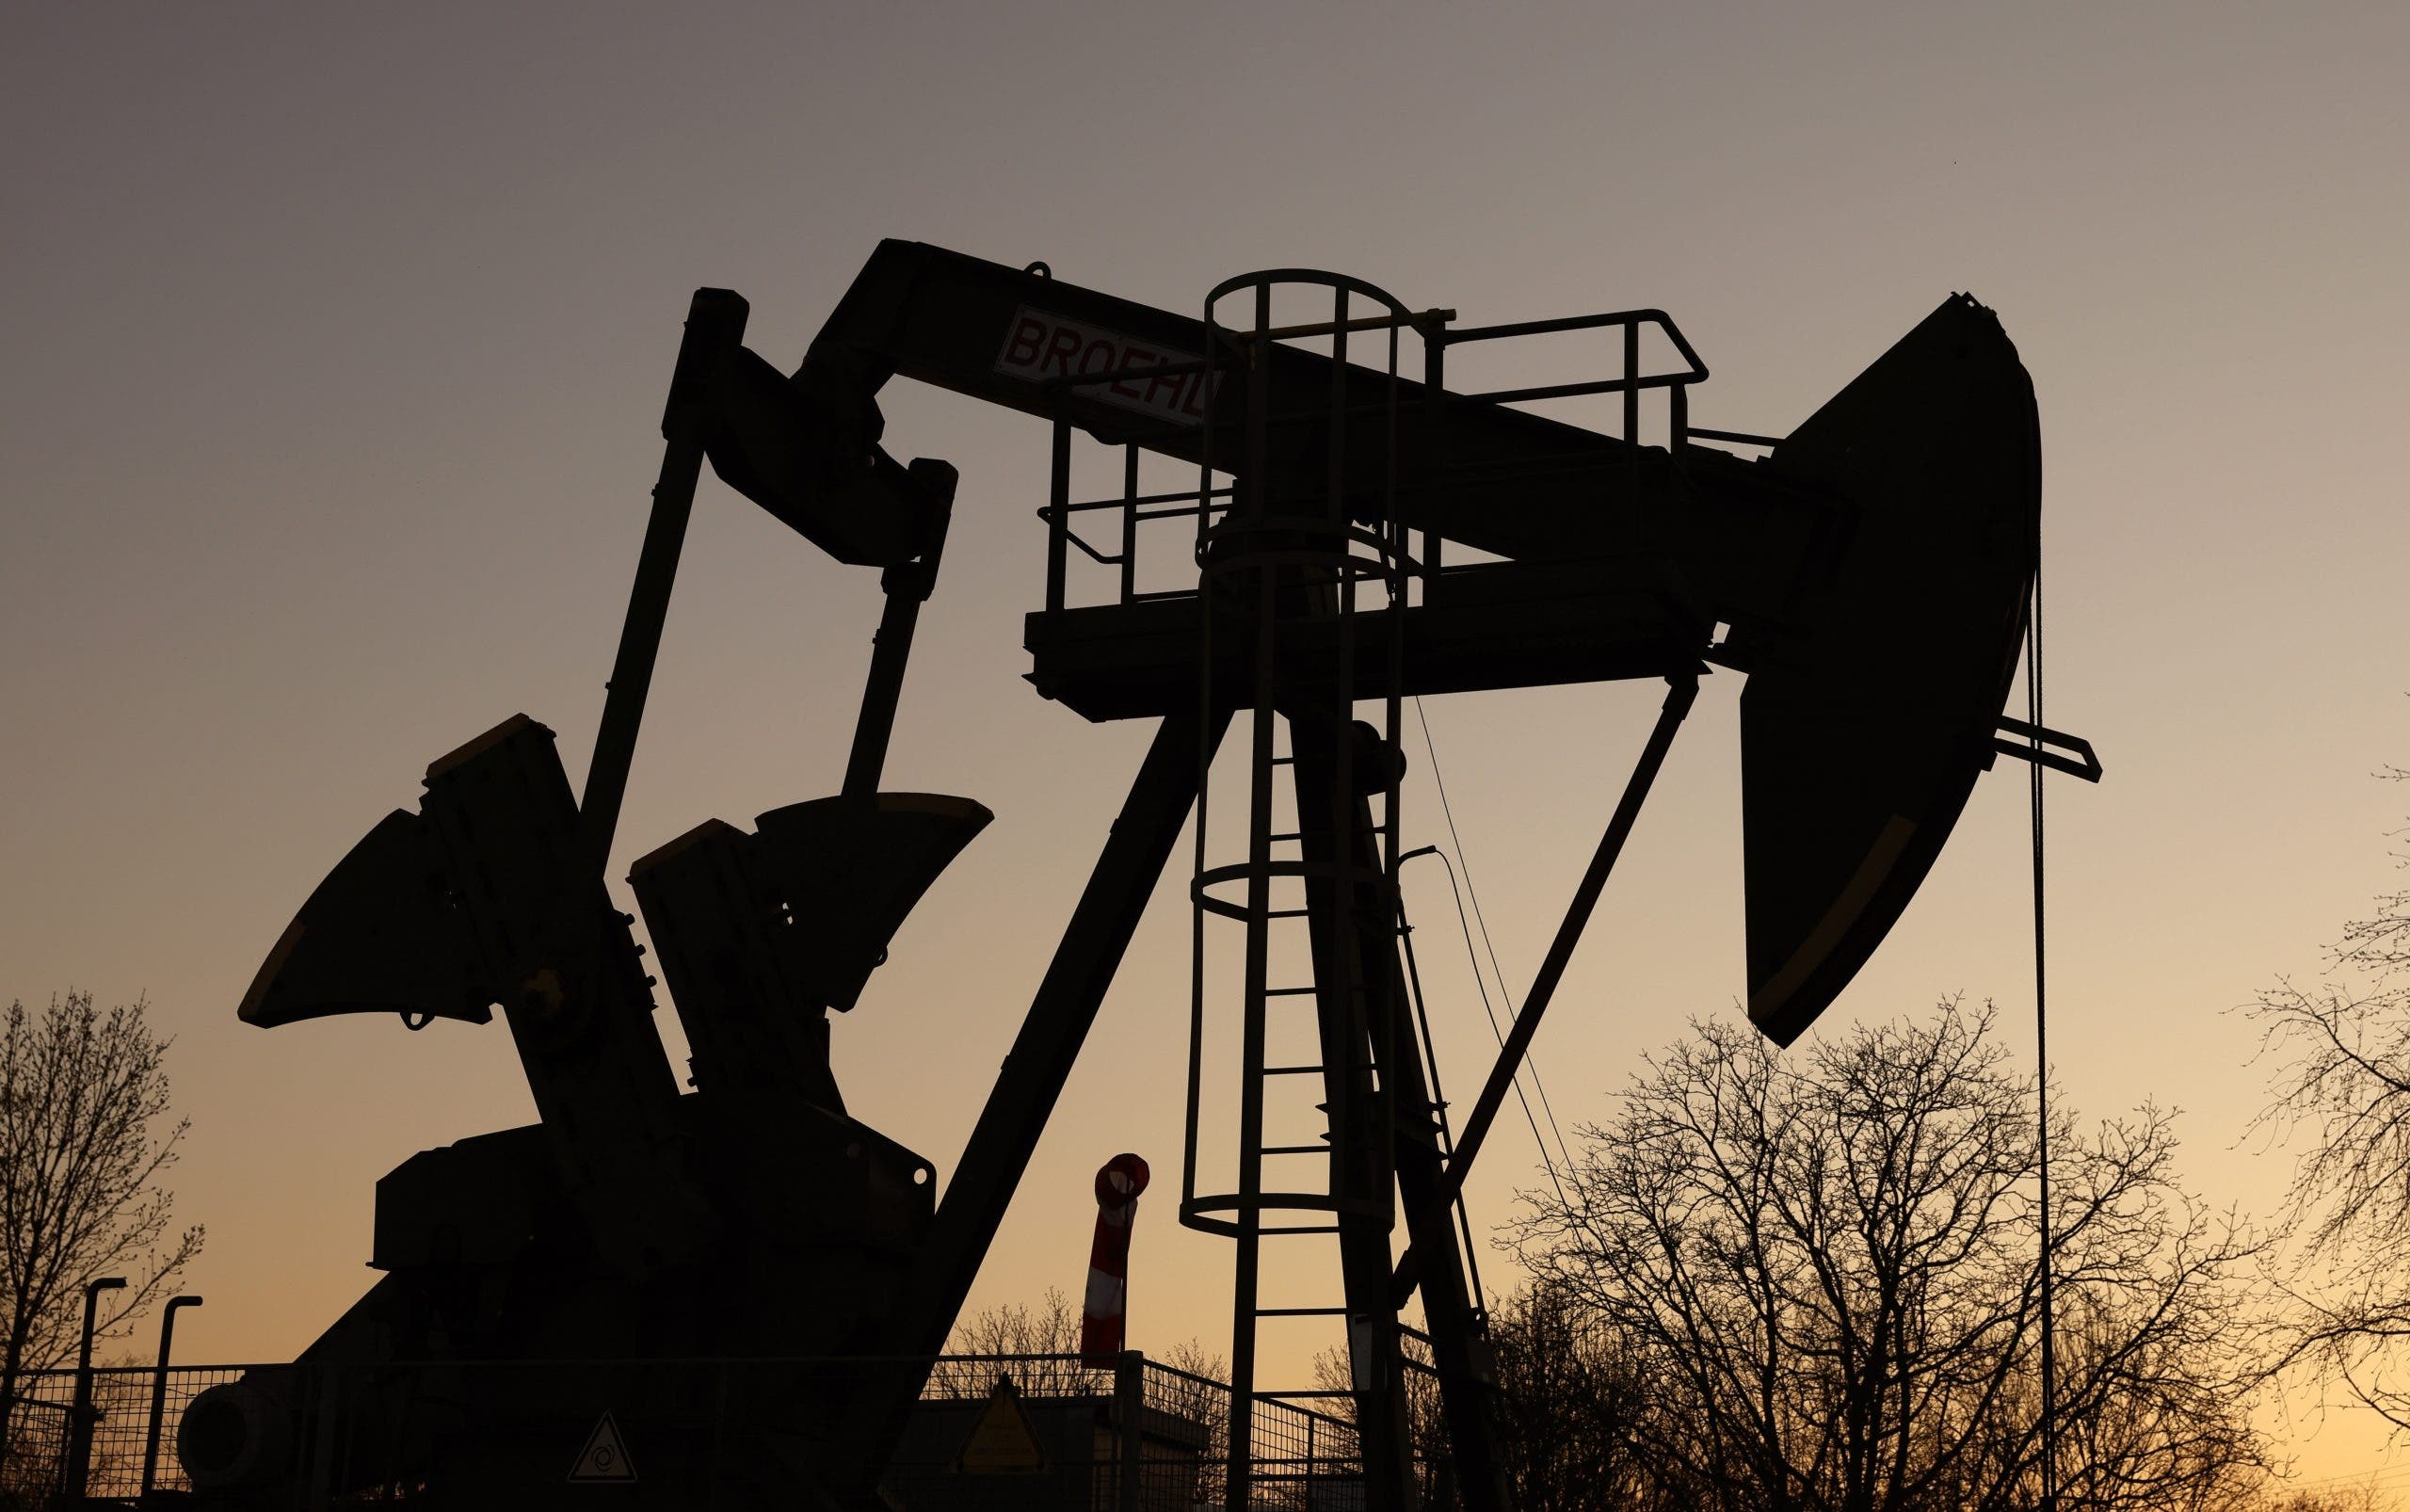 El petróleo de Texas abre con una bajada de 1,59 %, hasta 85,54 dólares